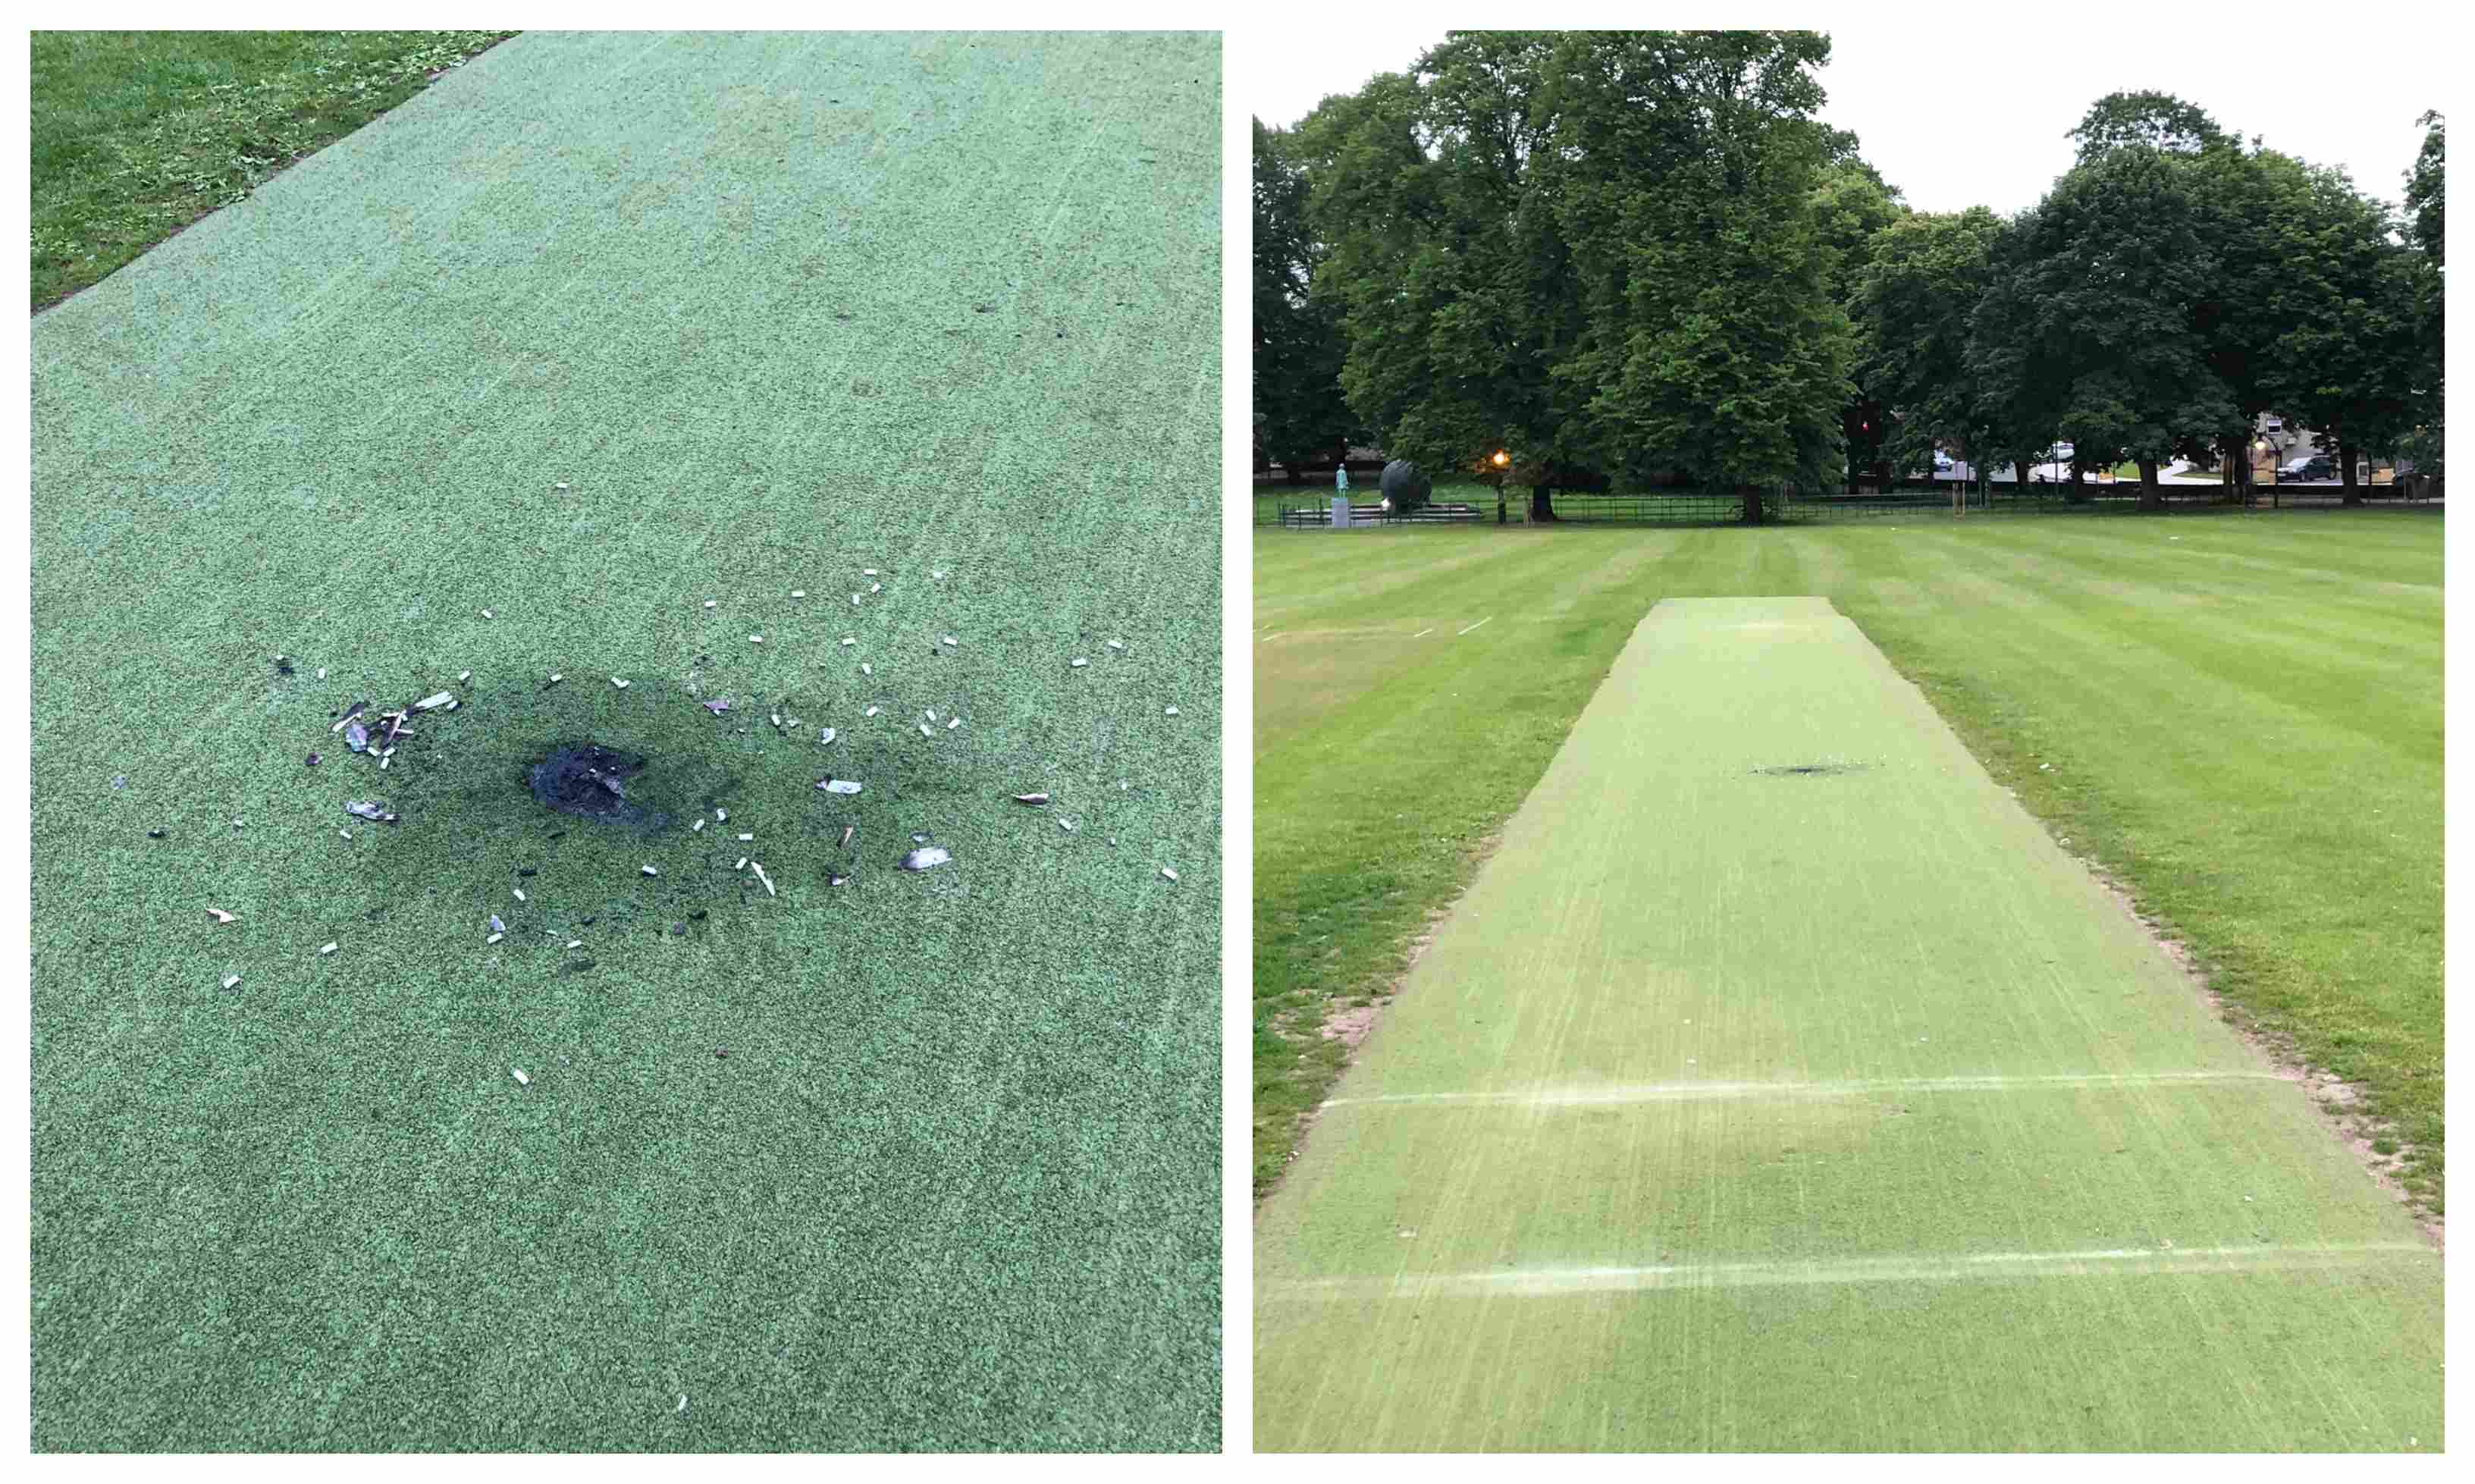 Armagh Cricket Club damaged wicket